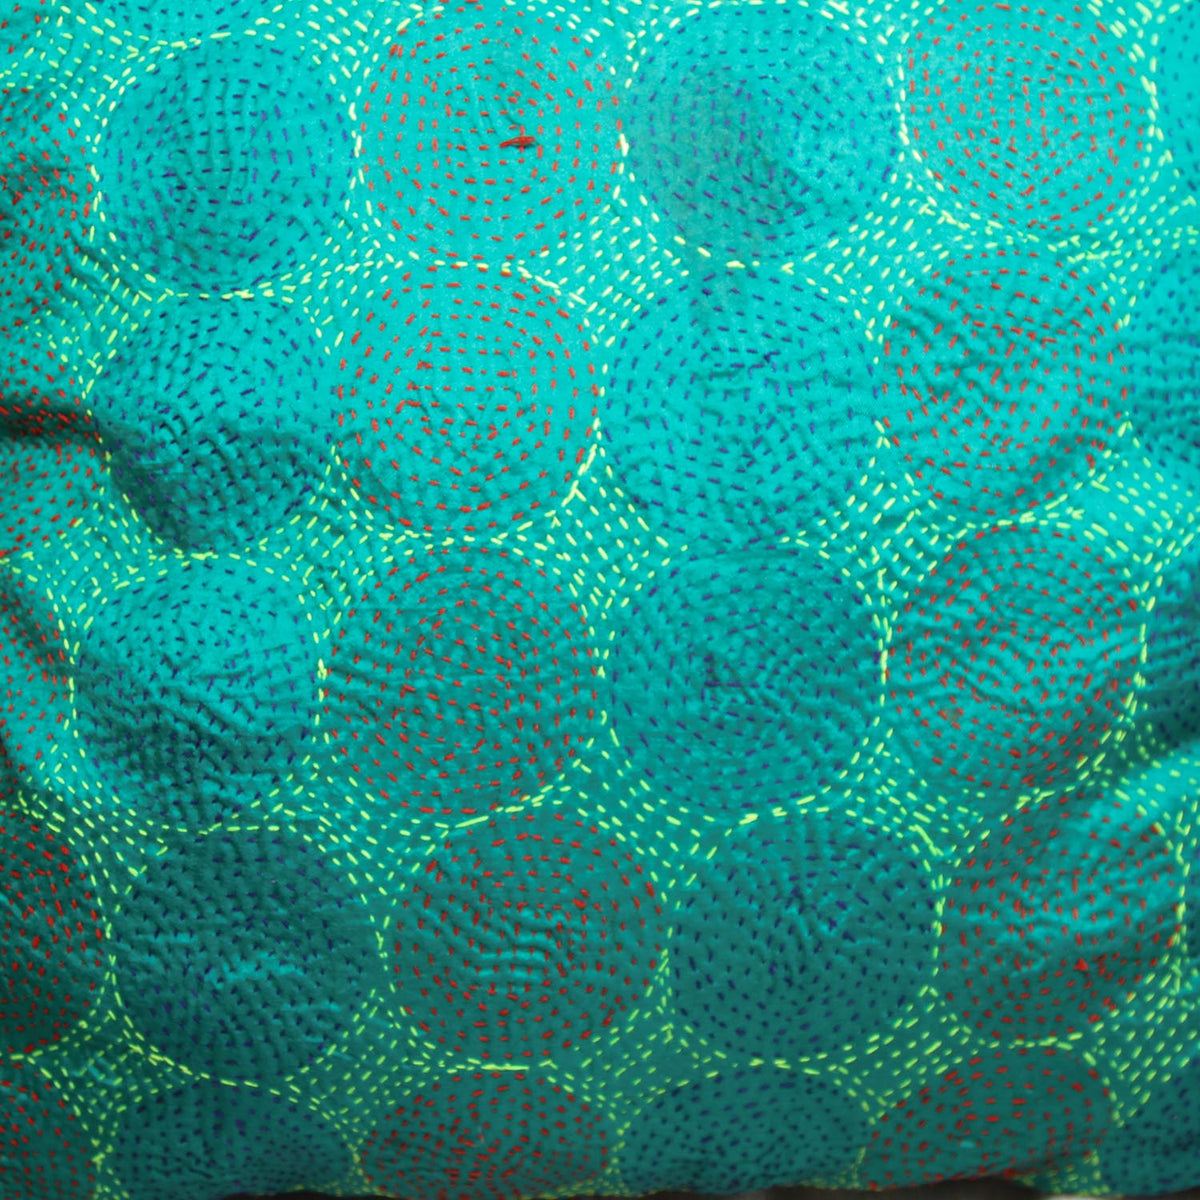 Silk Cotton Kantha Handmade Cushion Cover